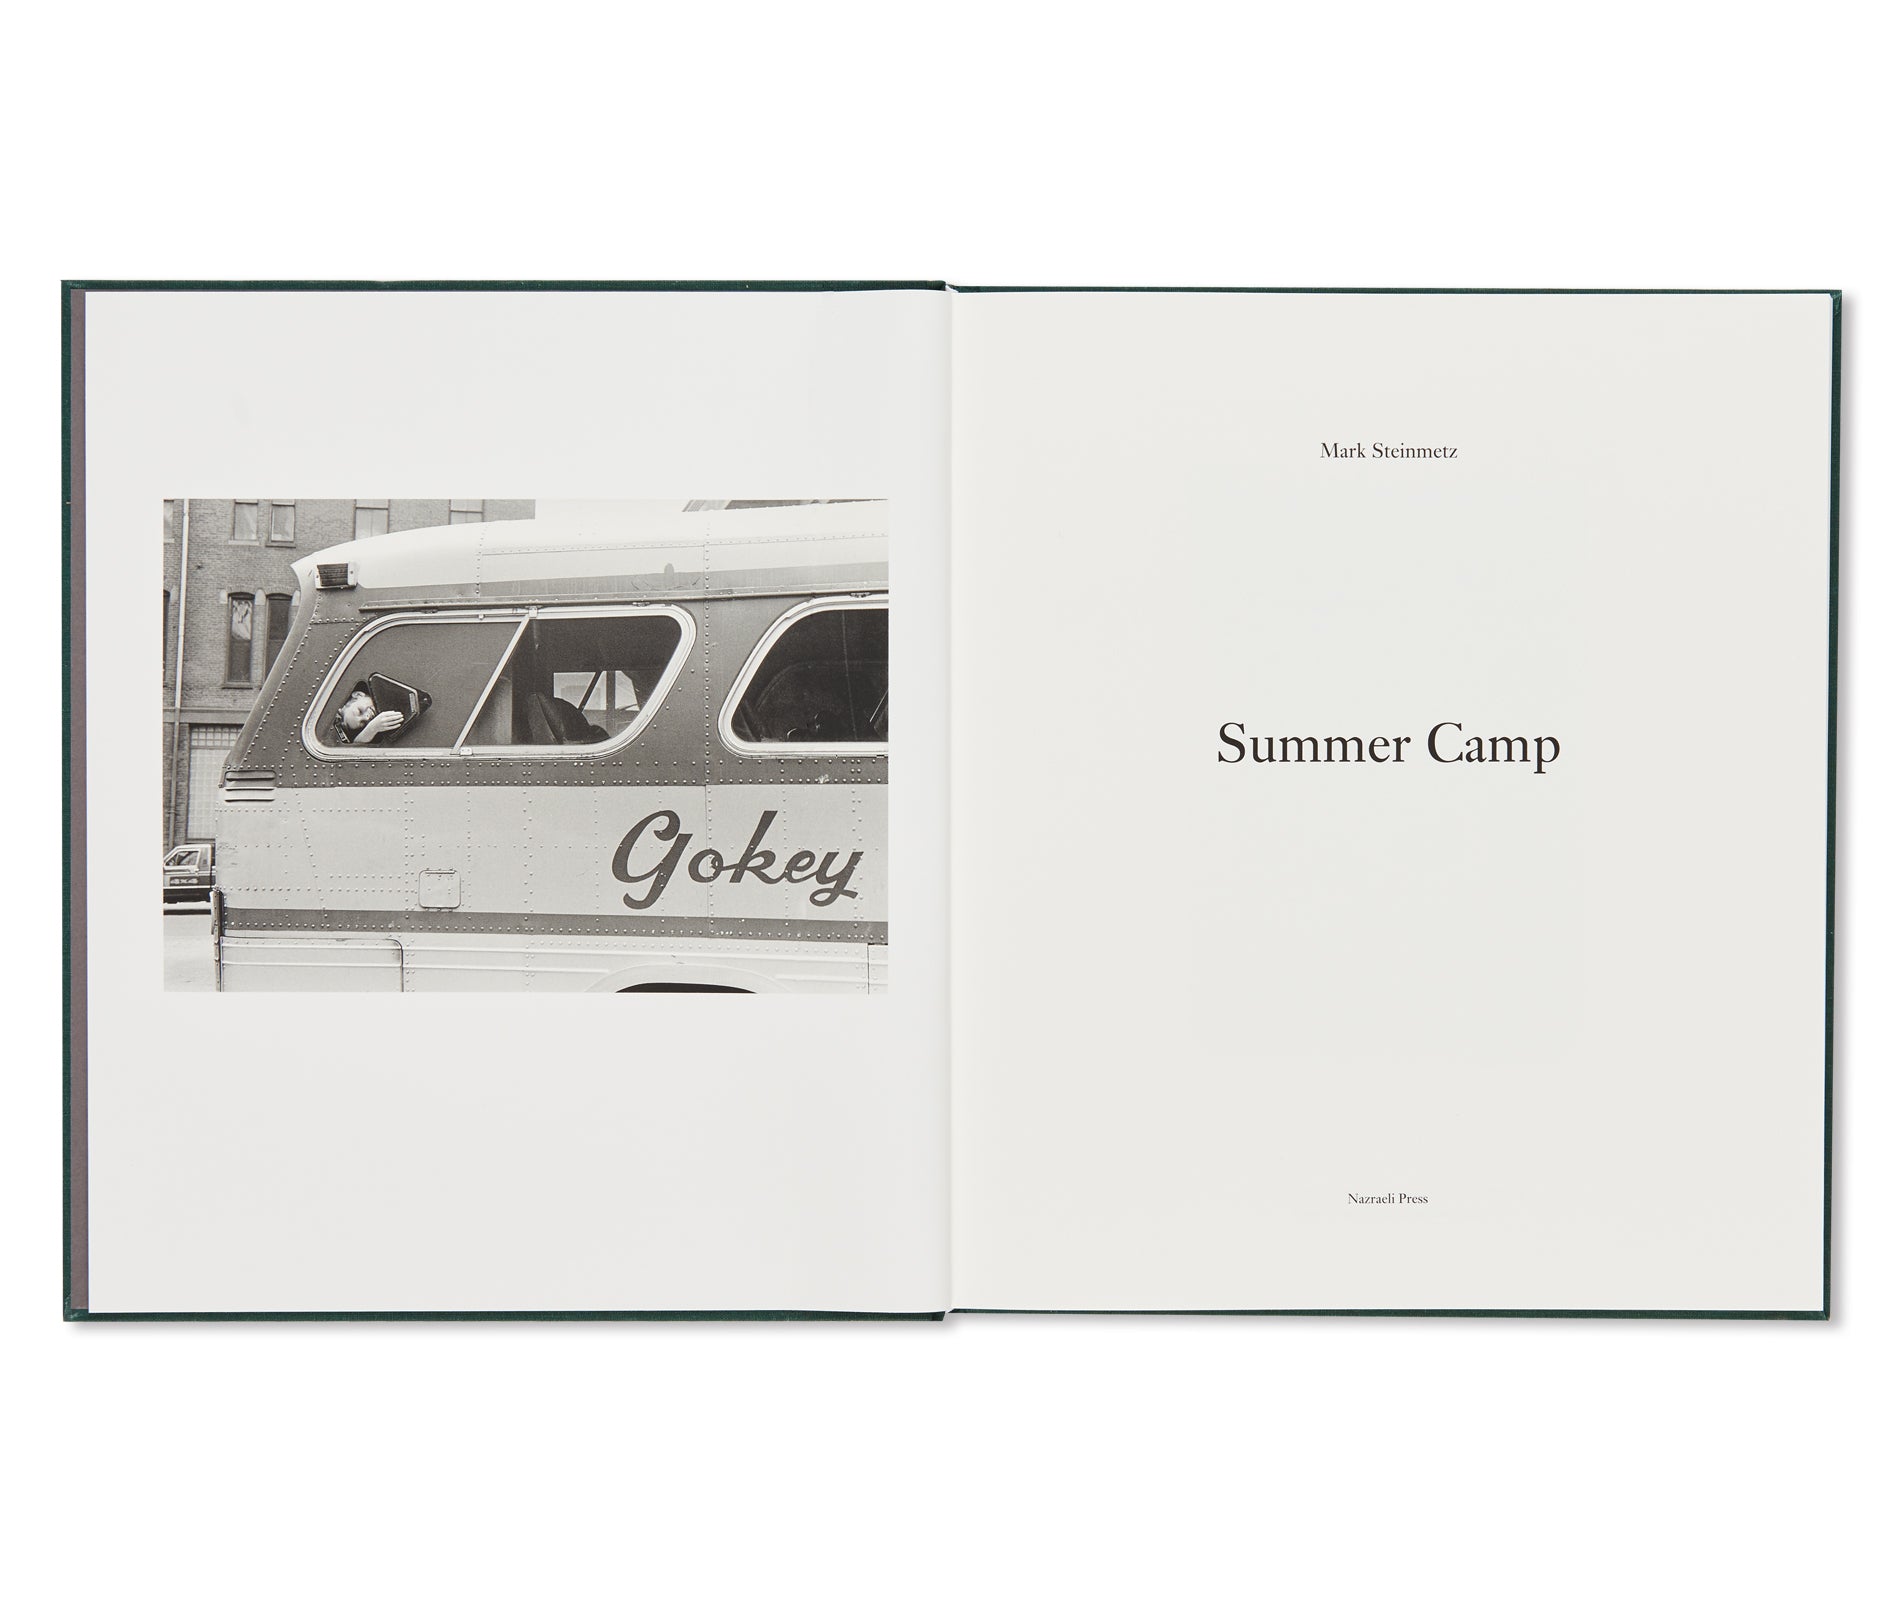 SUMMER CAMP by Mark Steinmetz